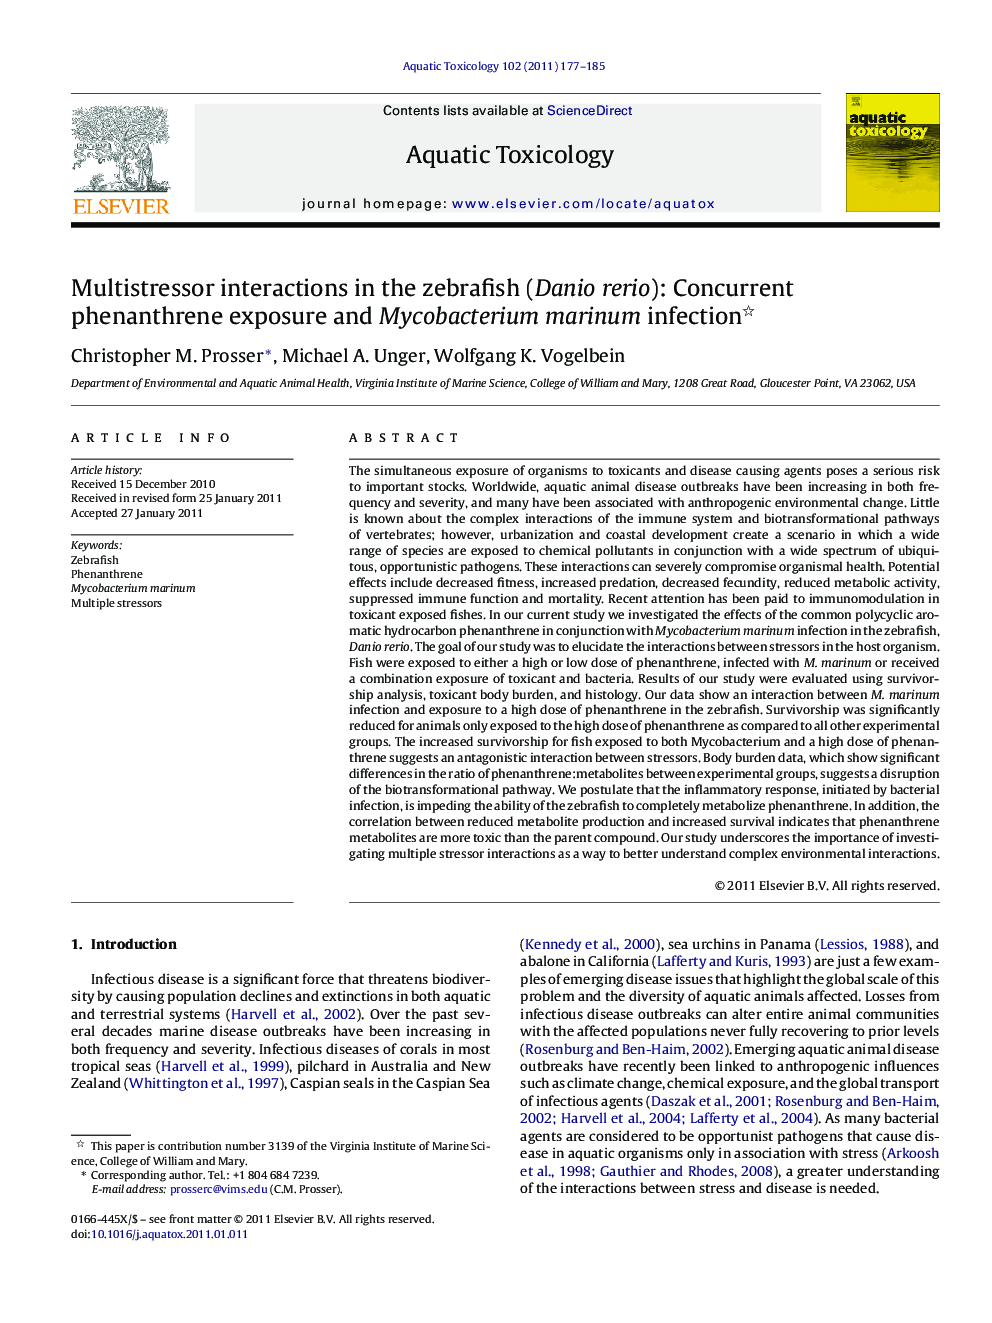 Multistressor interactions in the zebrafish (Danio rerio): Concurrent phenanthrene exposure and Mycobacterium marinum infection 